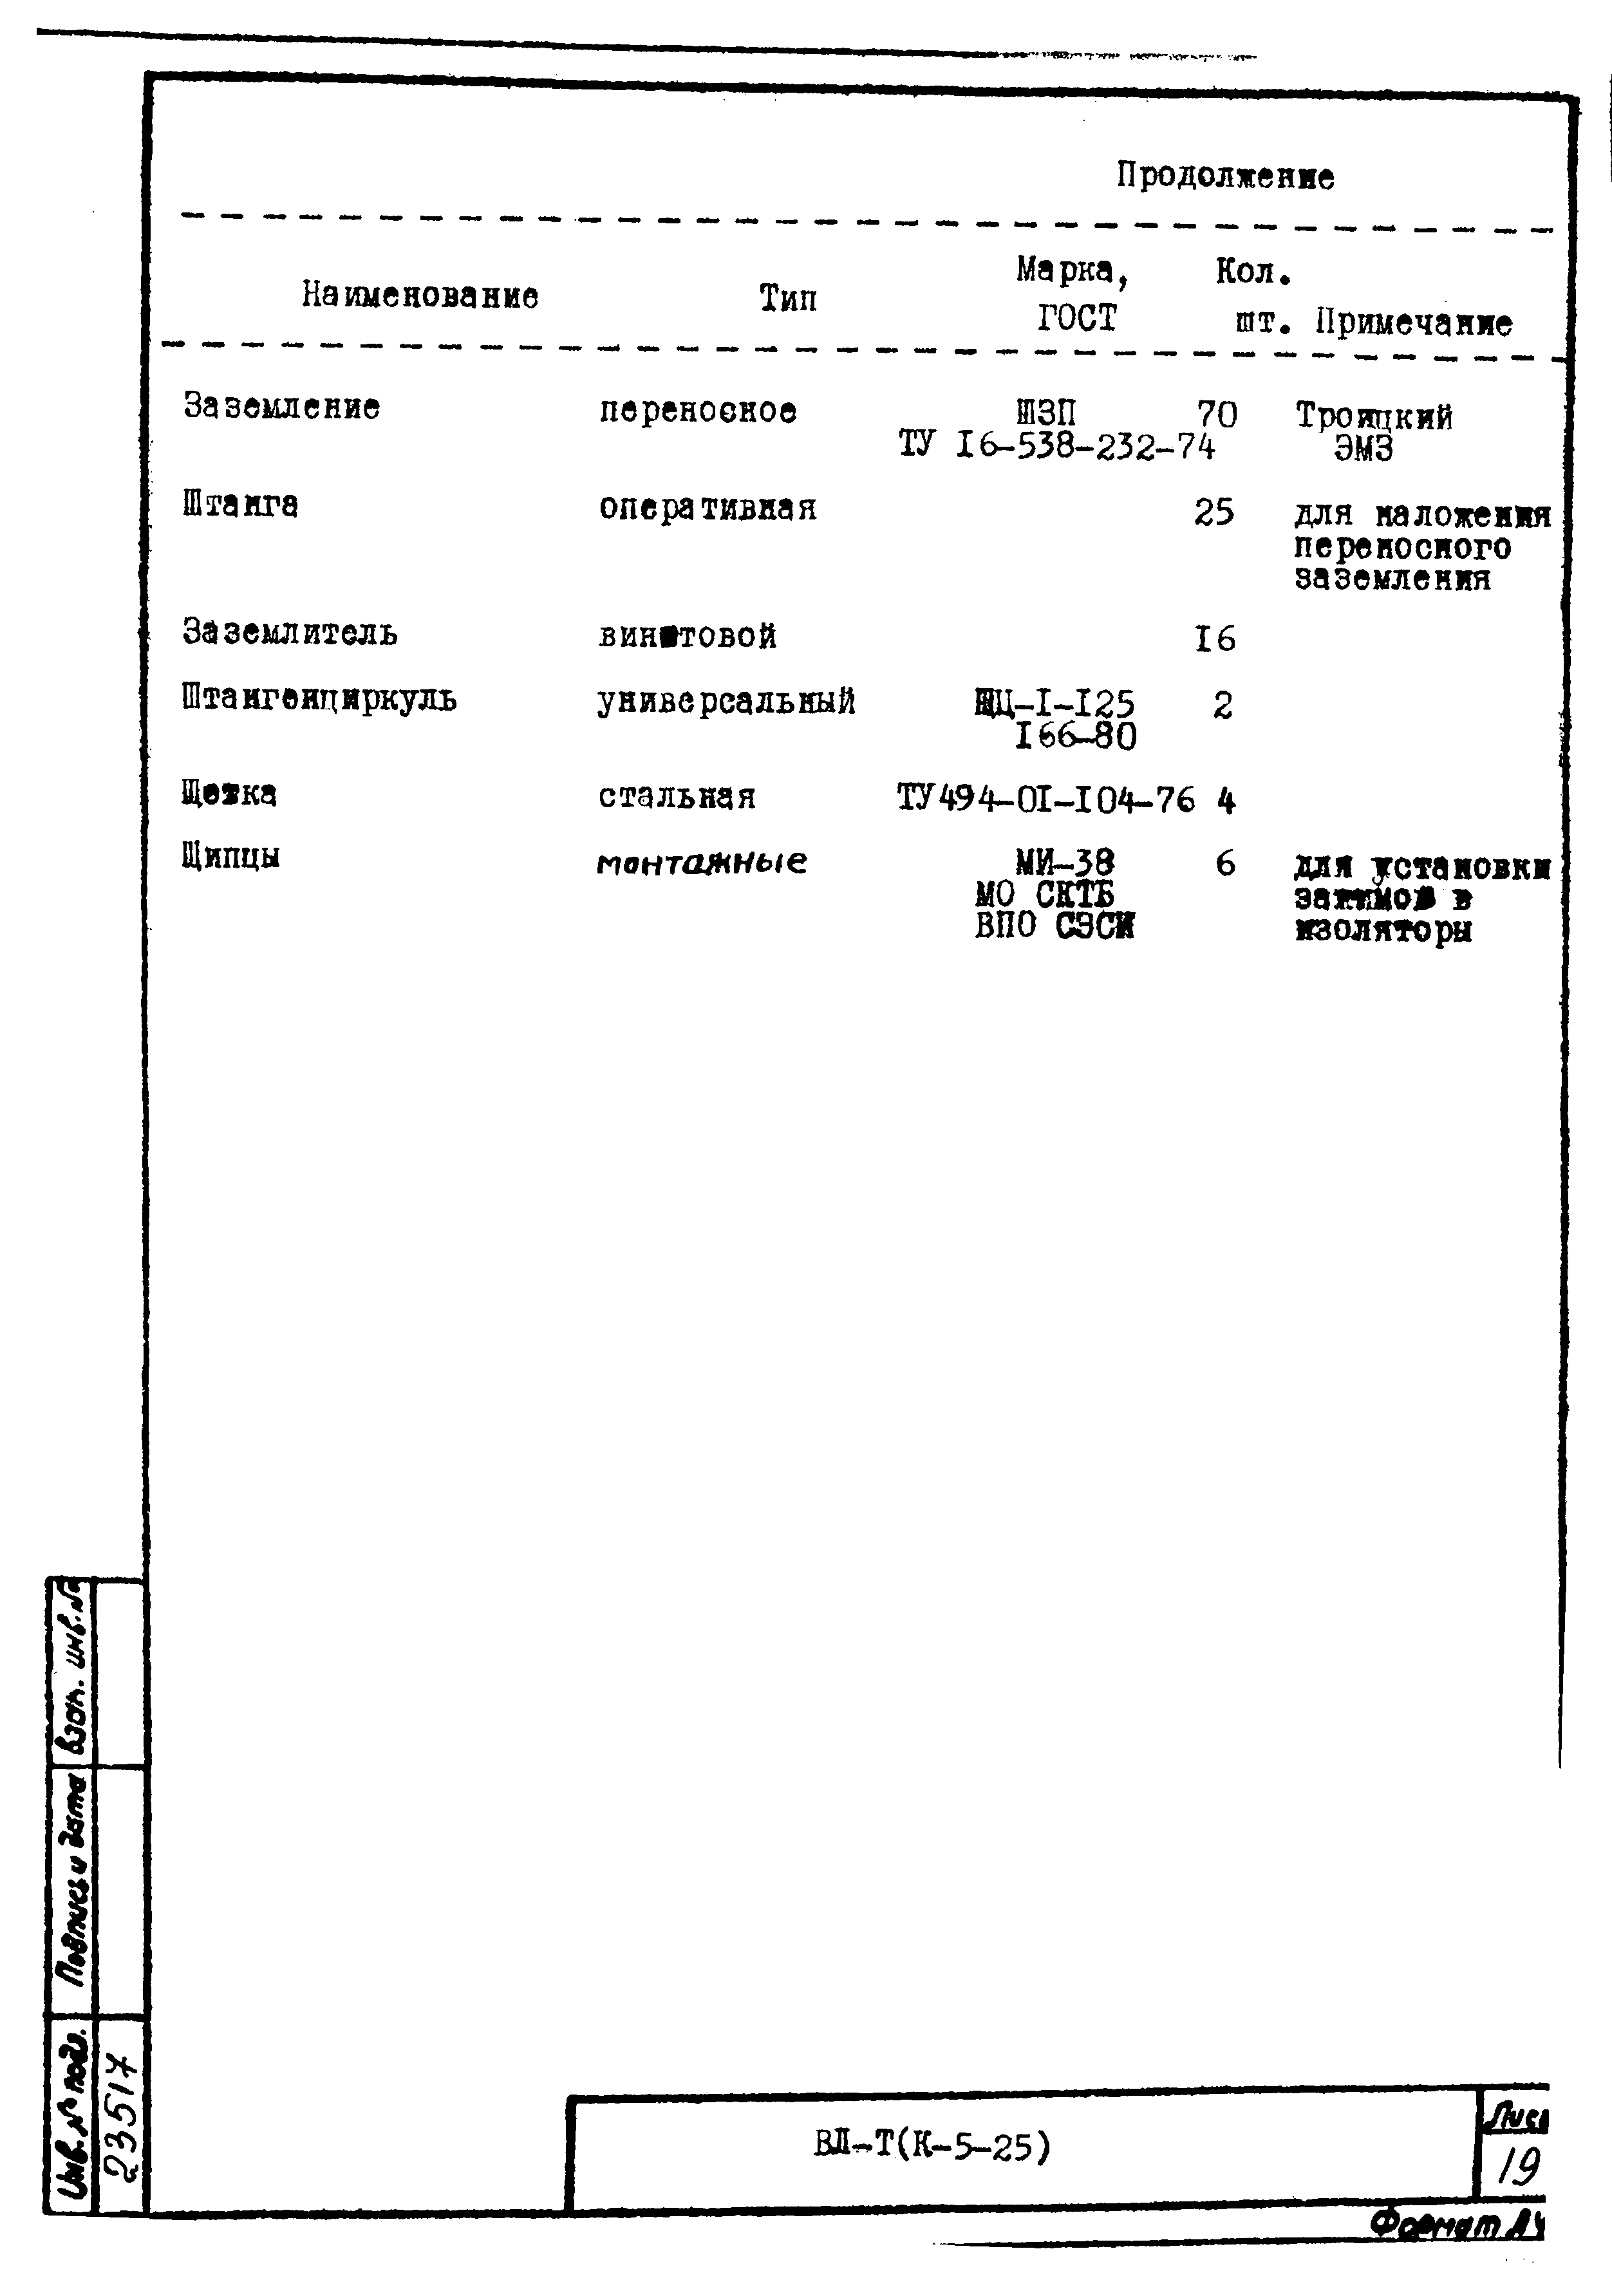 Технологическая карта К-5-25-36